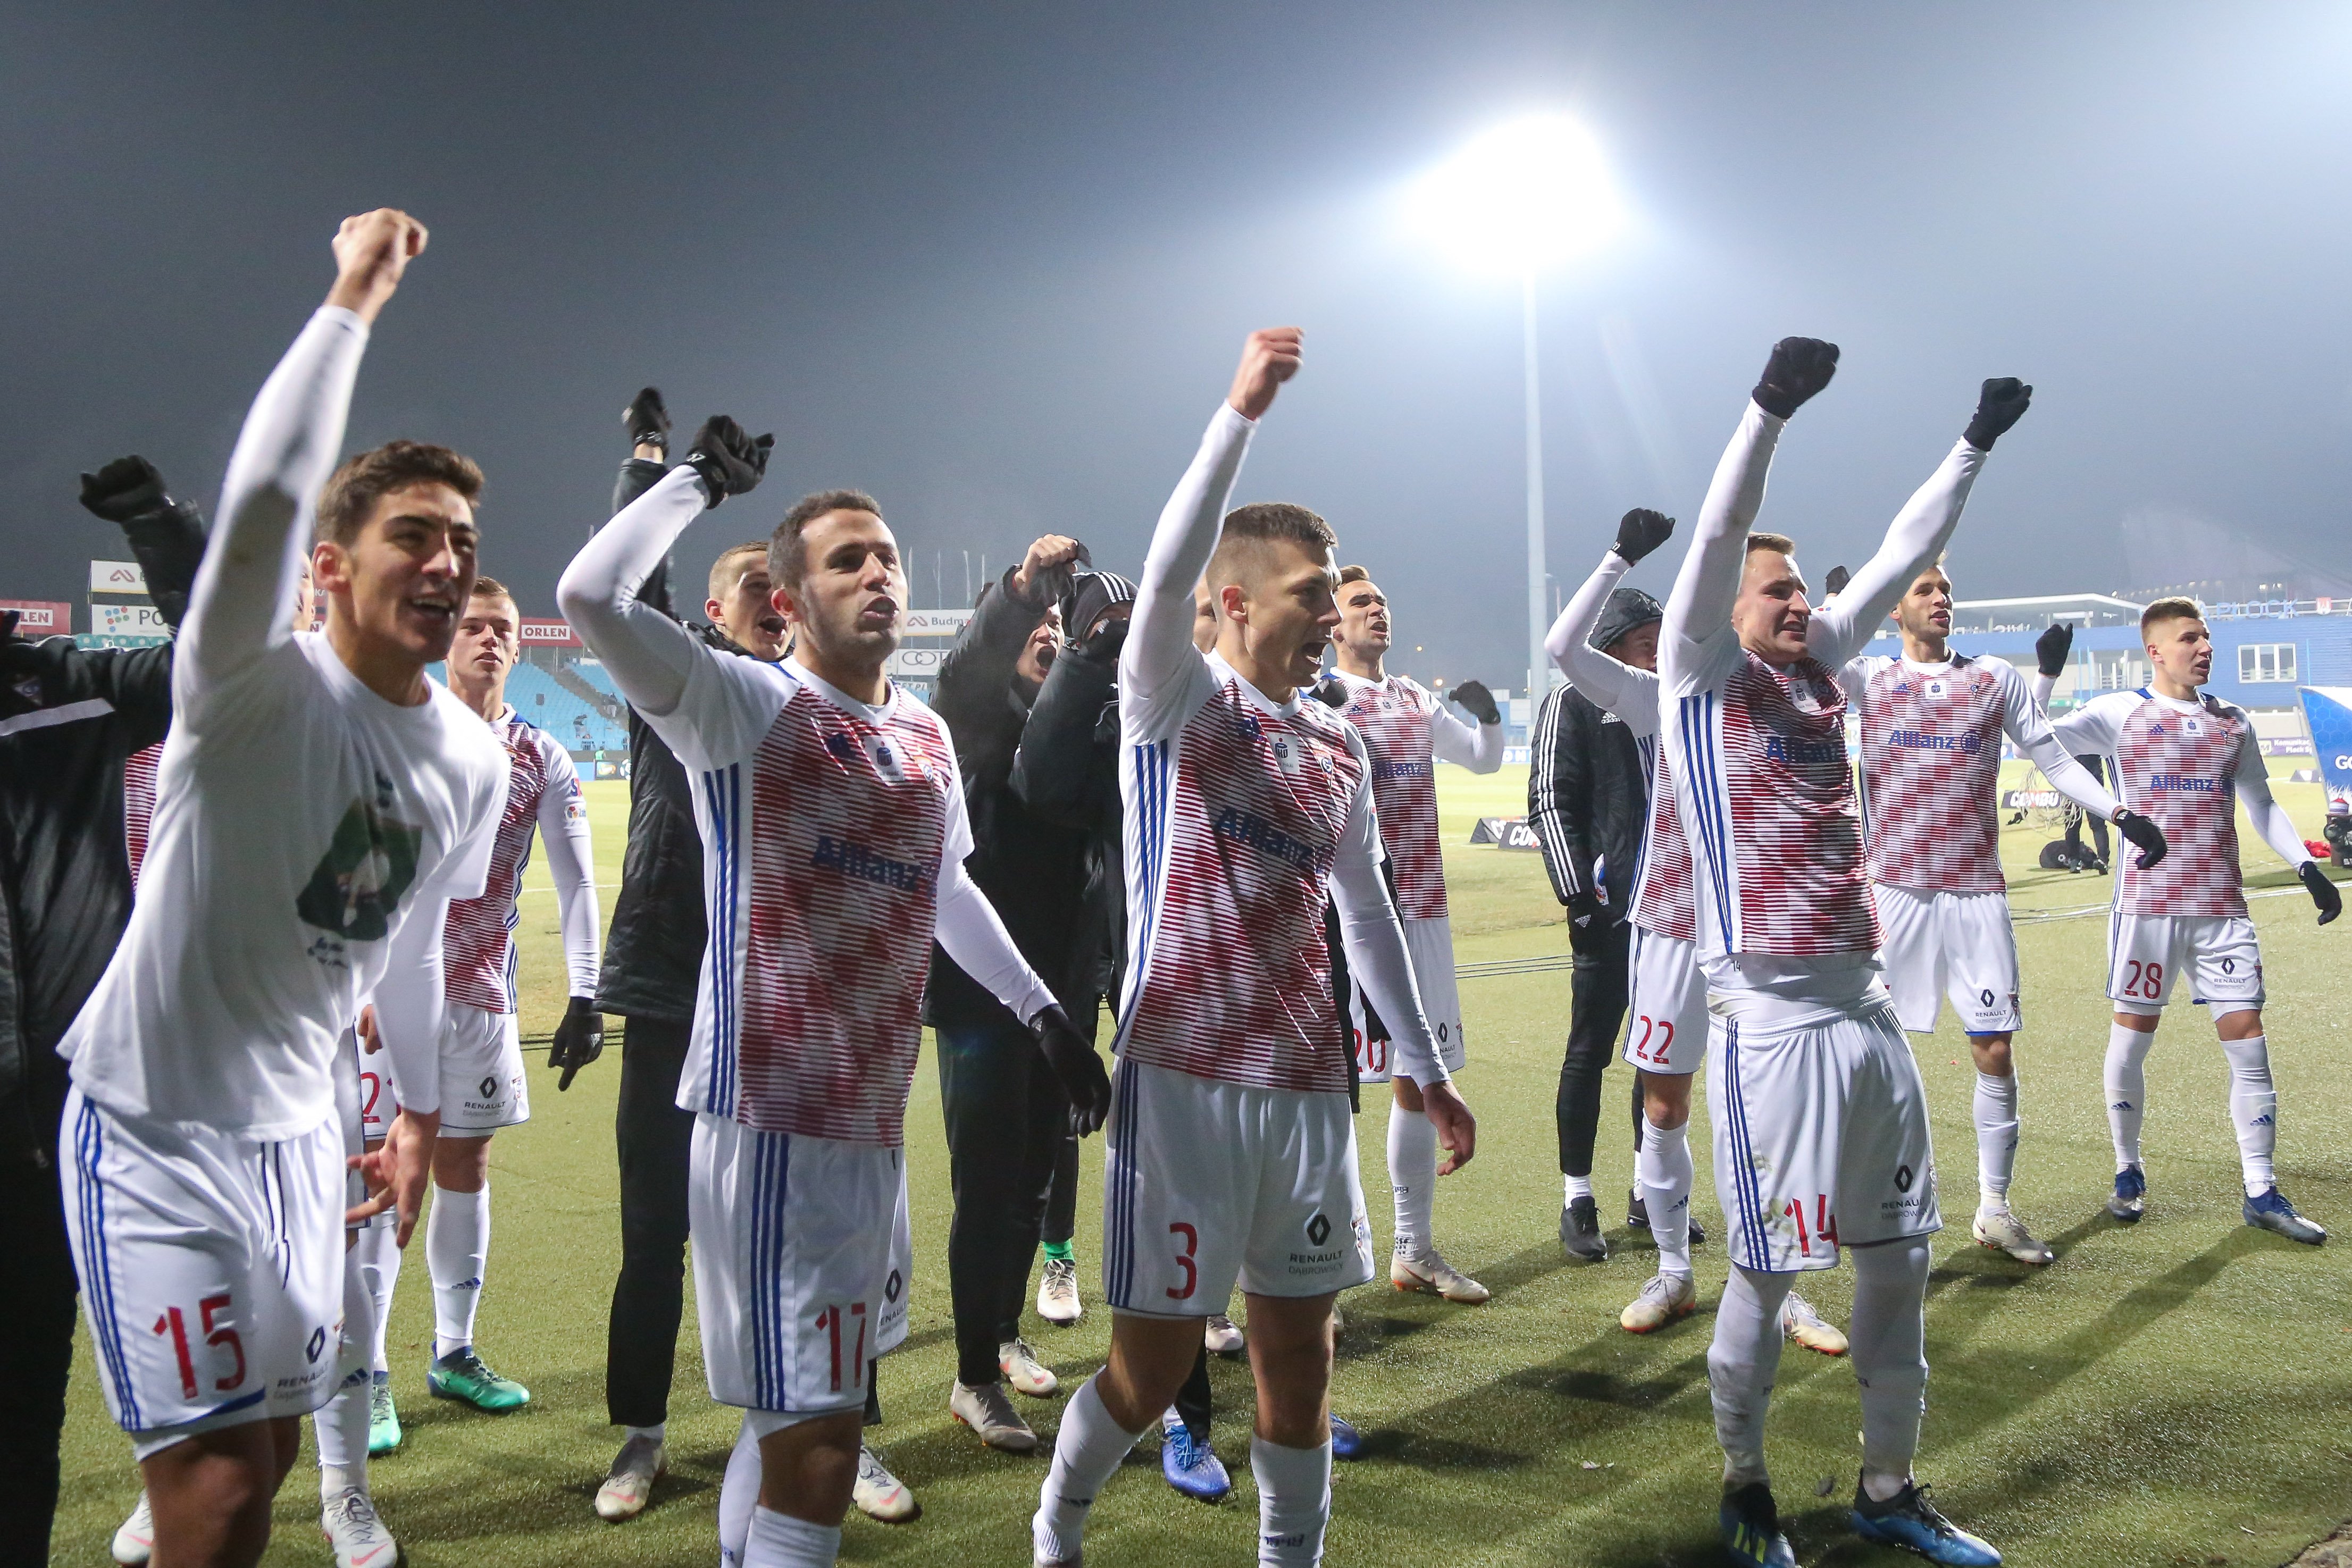 Piłkarze świętują po meczu Wisla Plock - Gornik Zabrze